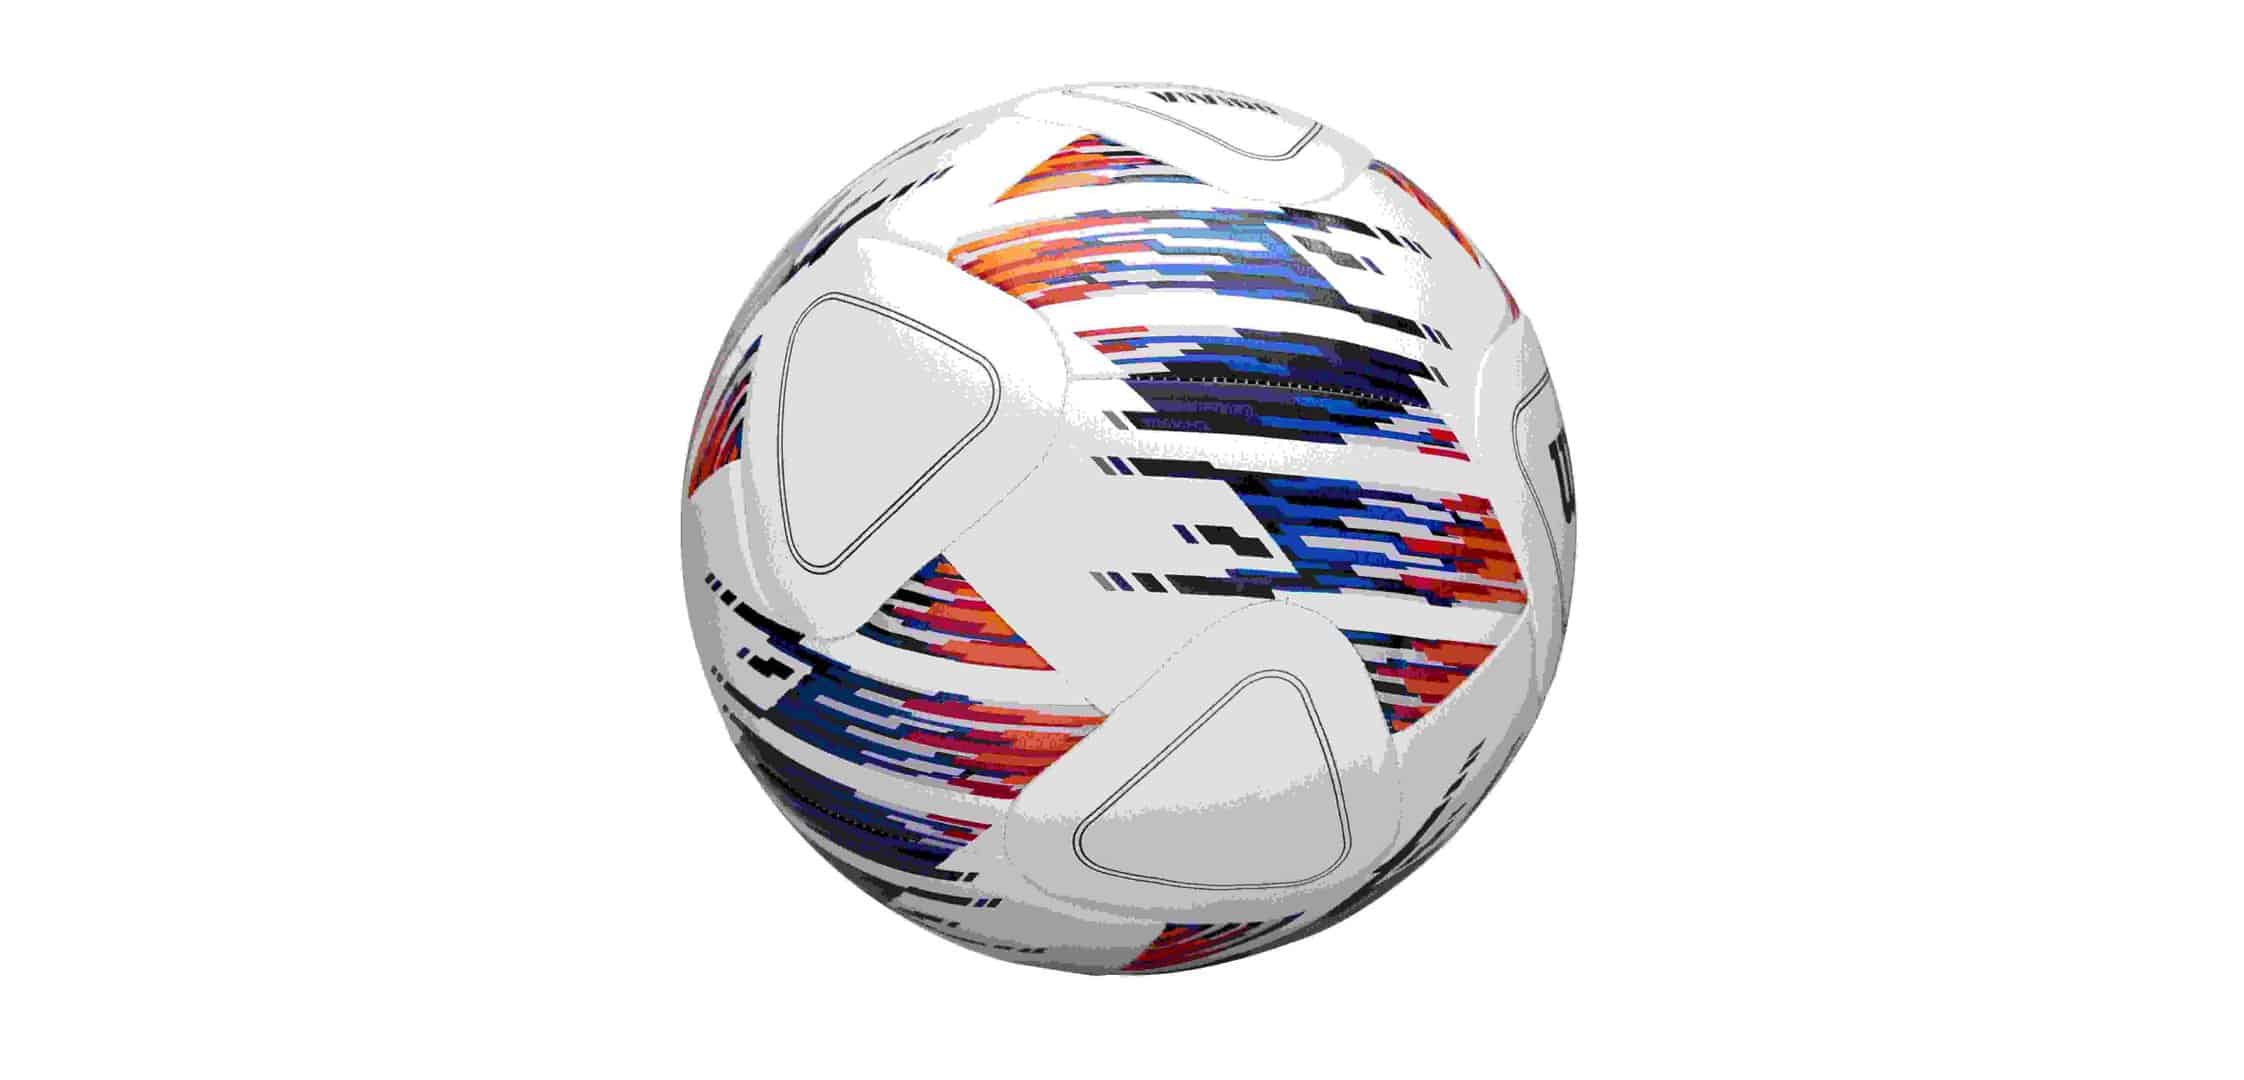 Wilson Football NCAA Vivido Replica Game Ball - Size 5